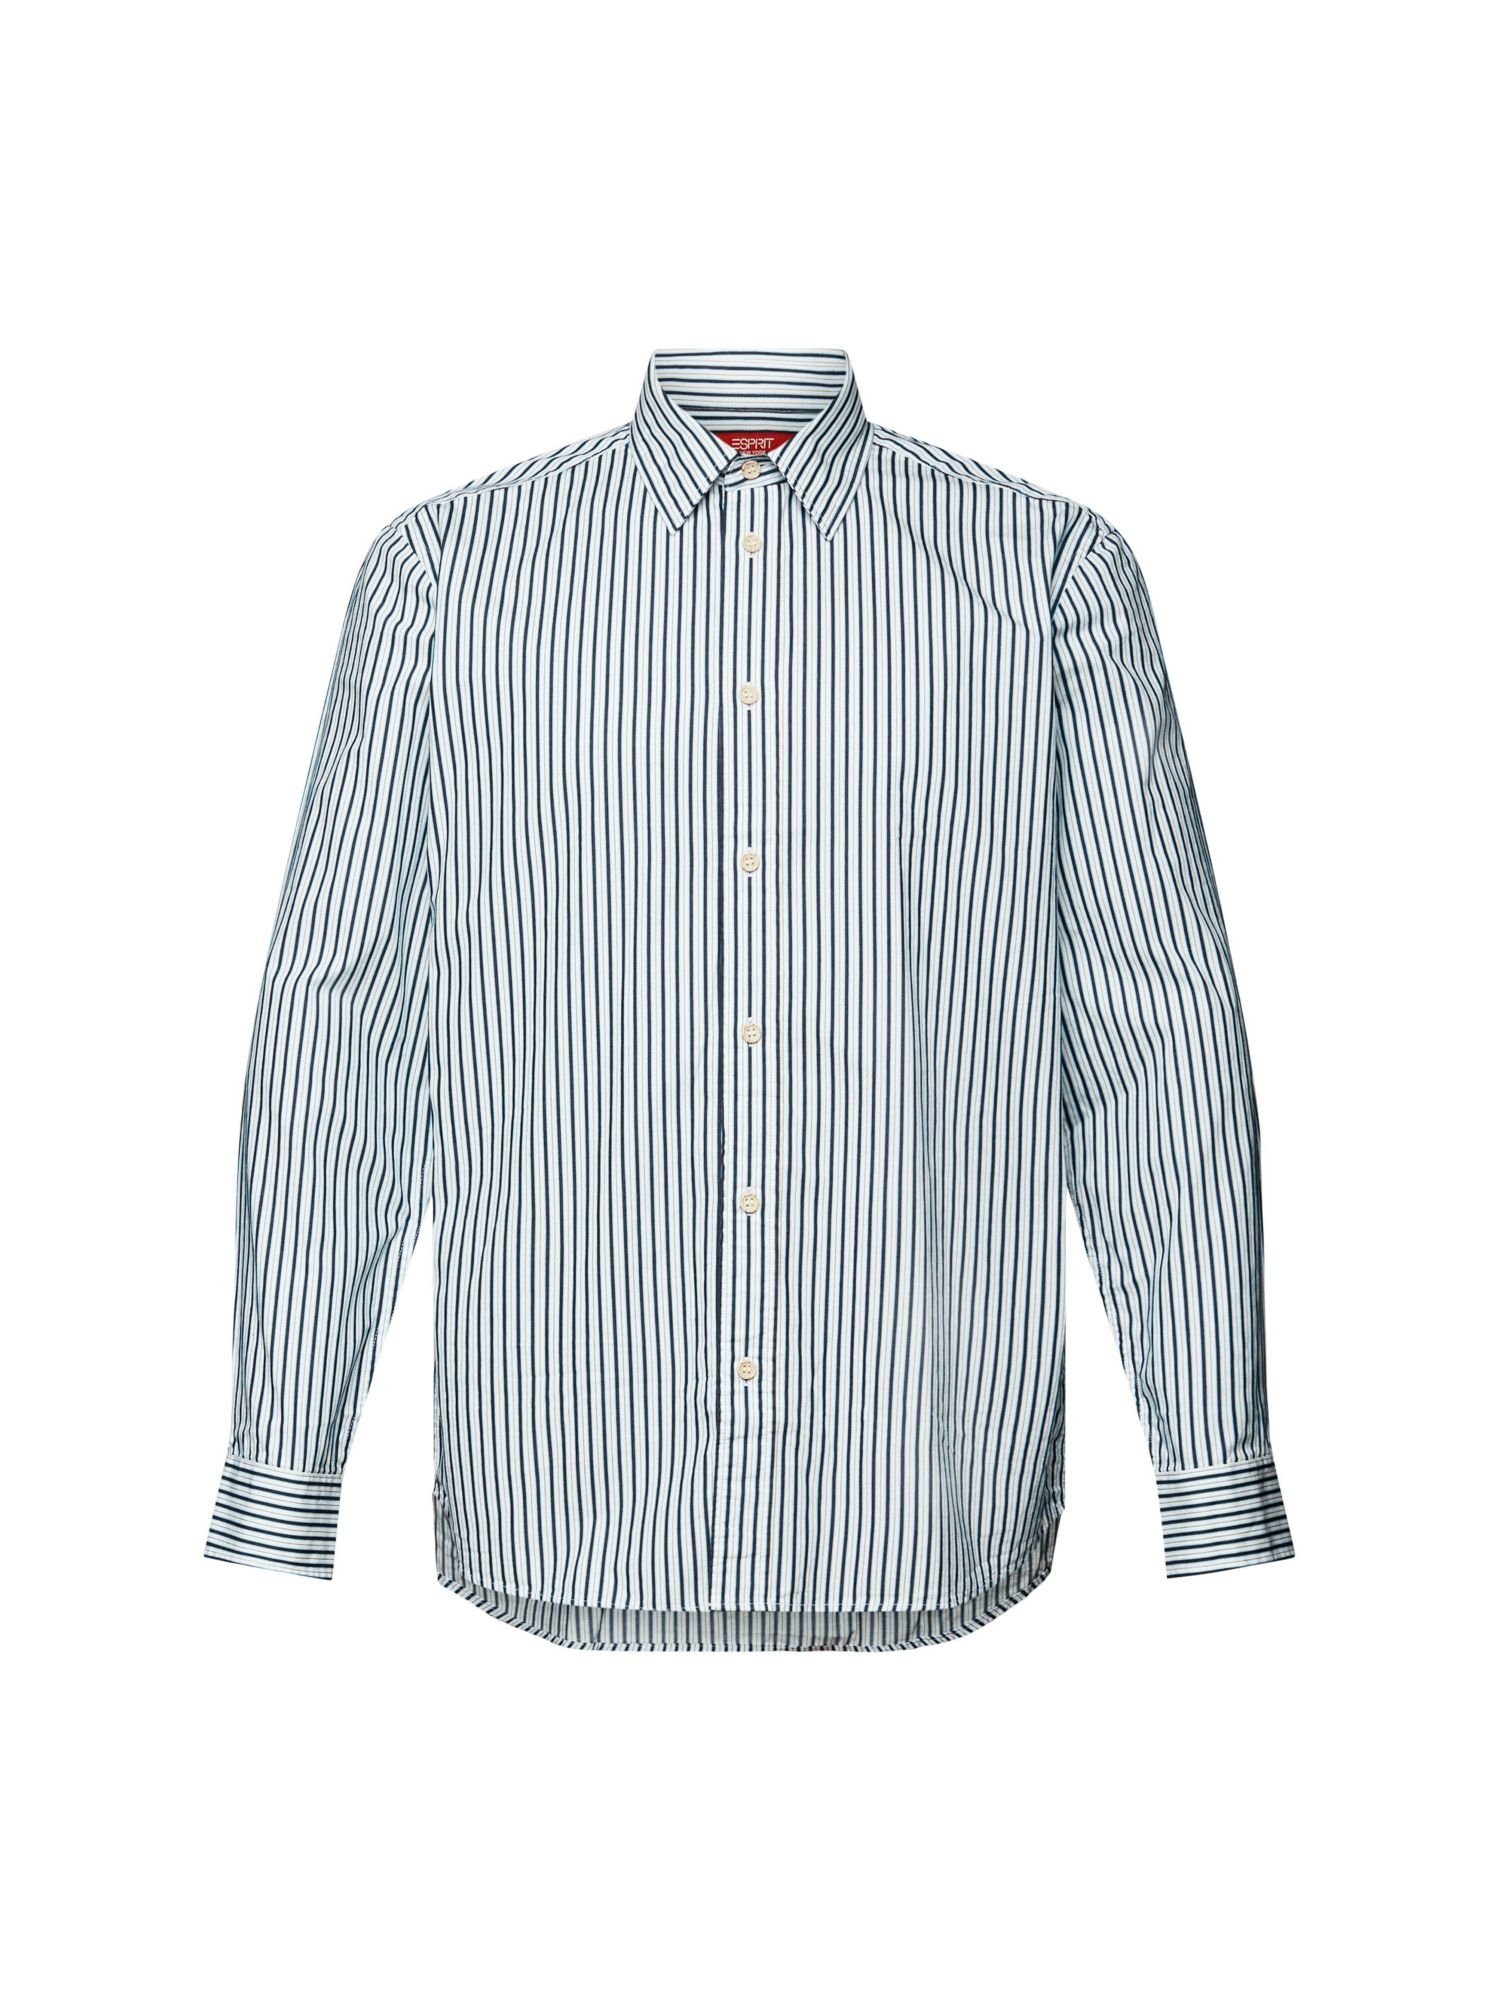 Esprit Langarmhemd Hemd mit Streifen, 100% Baumwolle ICE